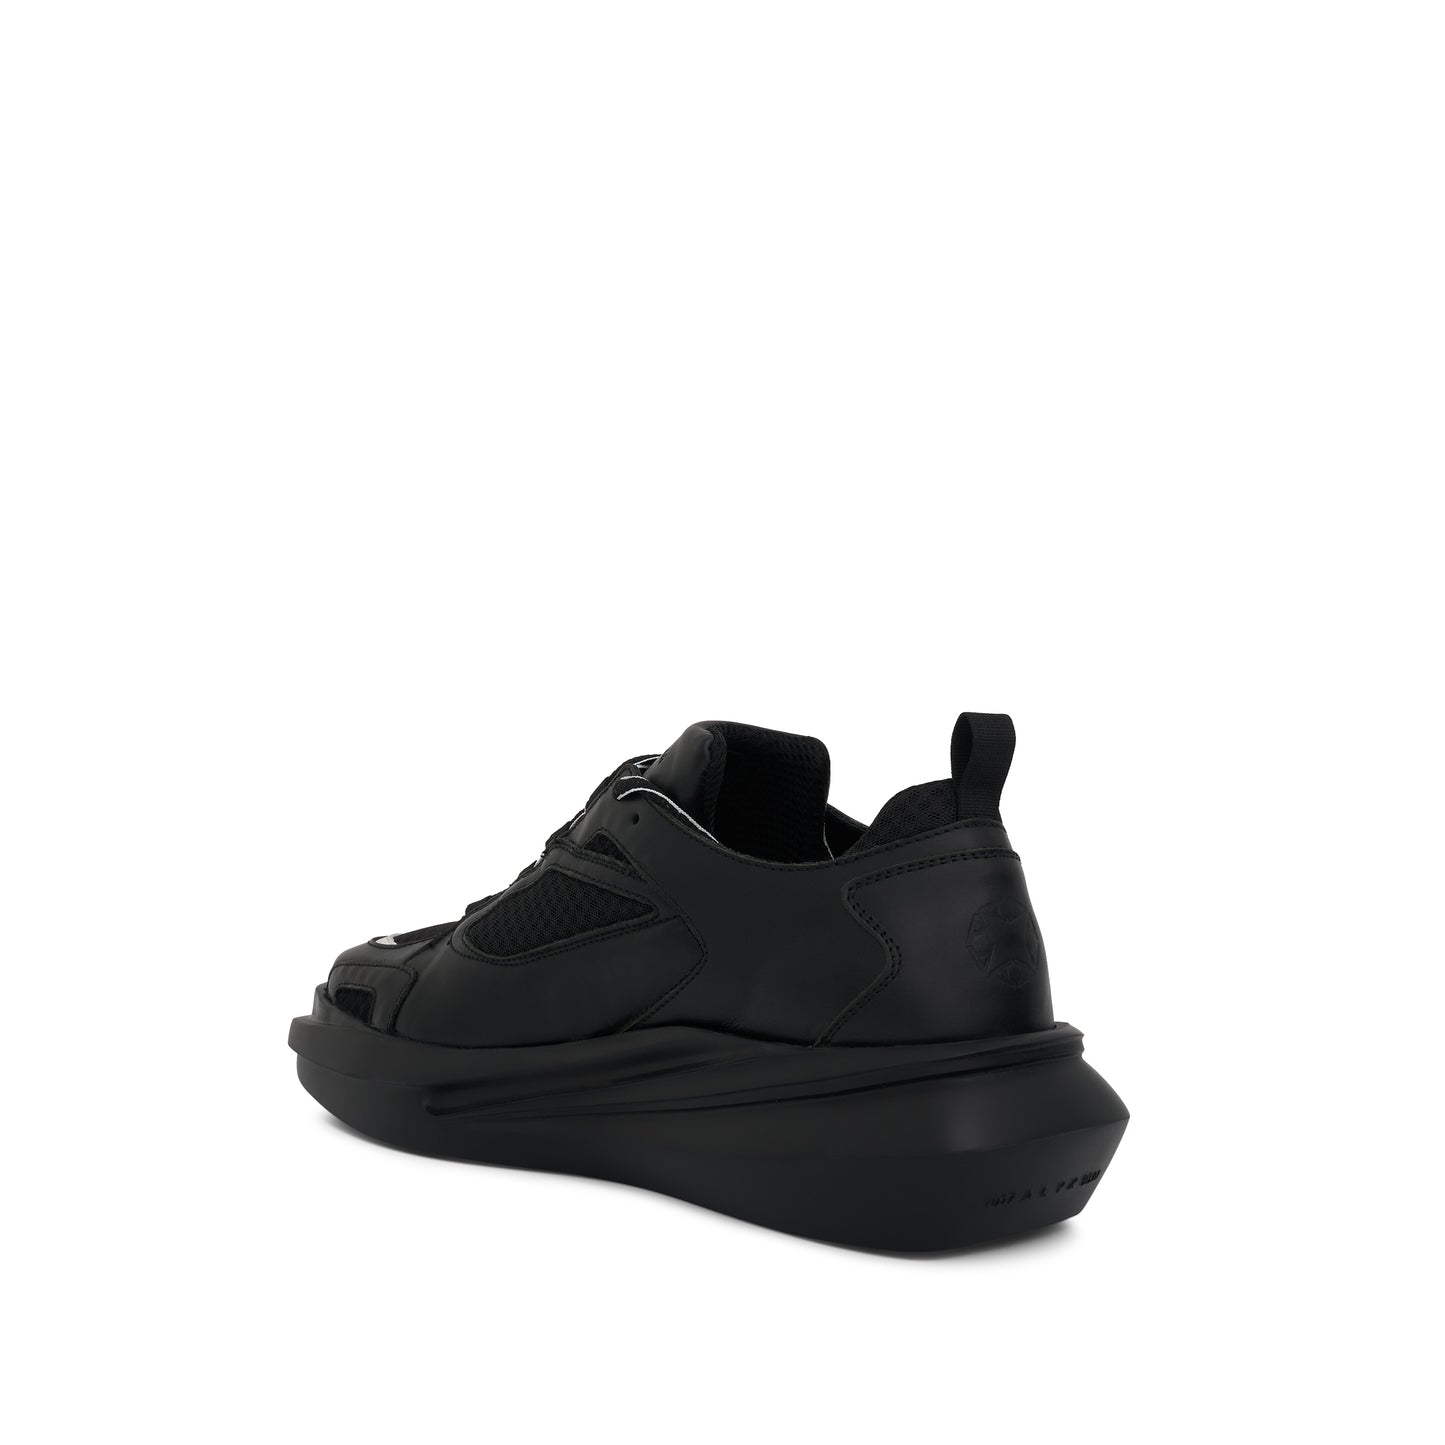 Mixed Mono Hiking Sneaker in Black/White